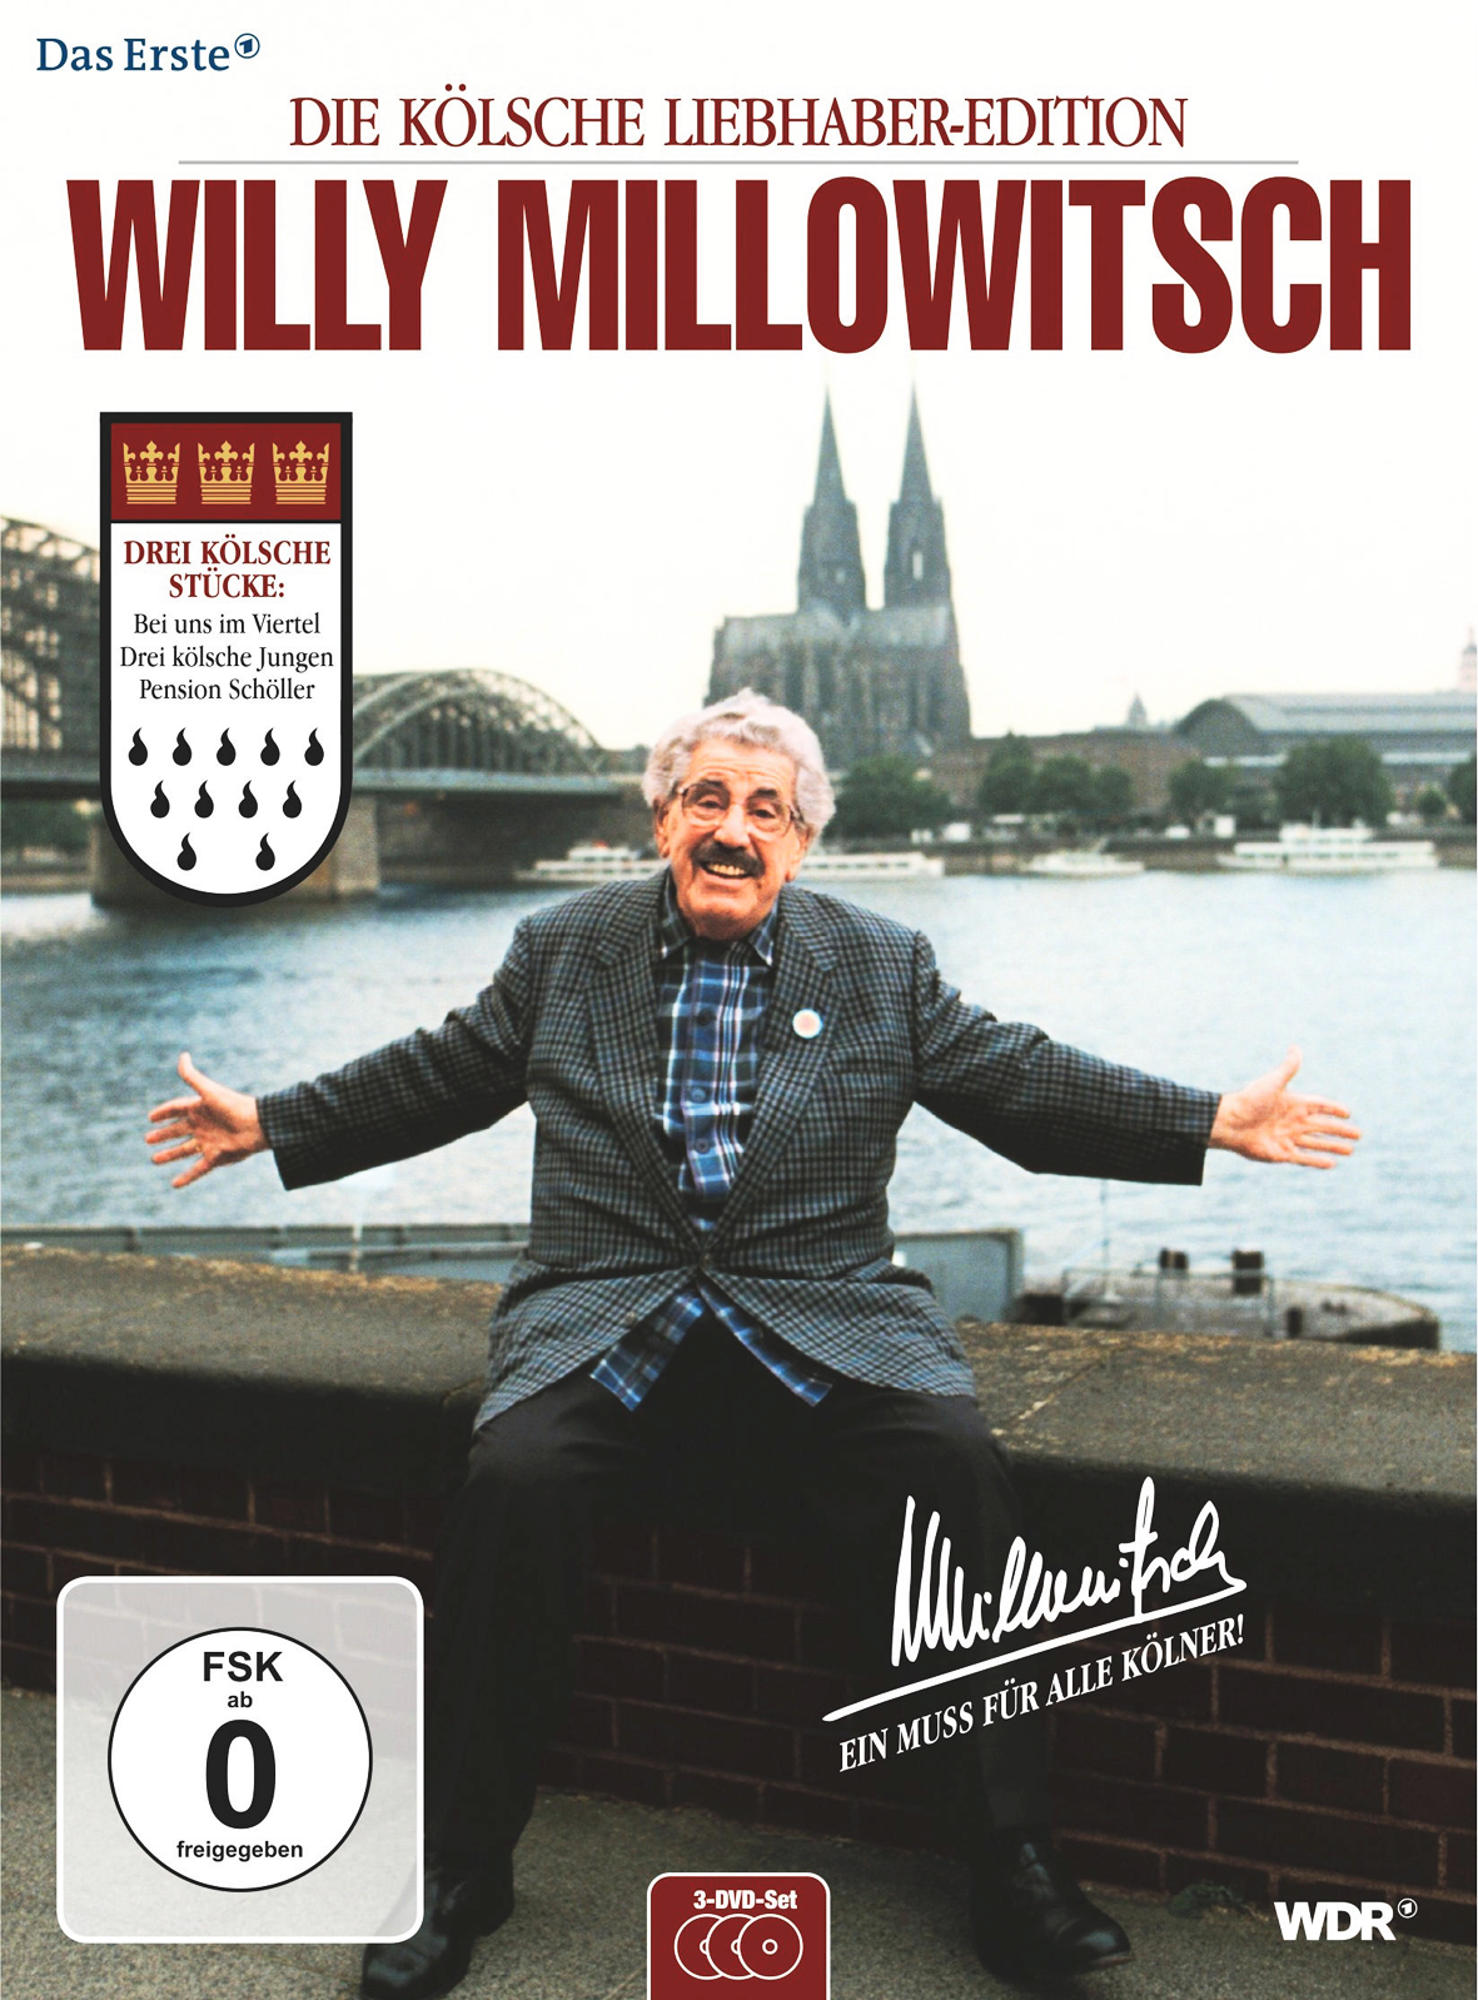 Willy Millowitsch - Köln (Kölsche DVD Edition) Box